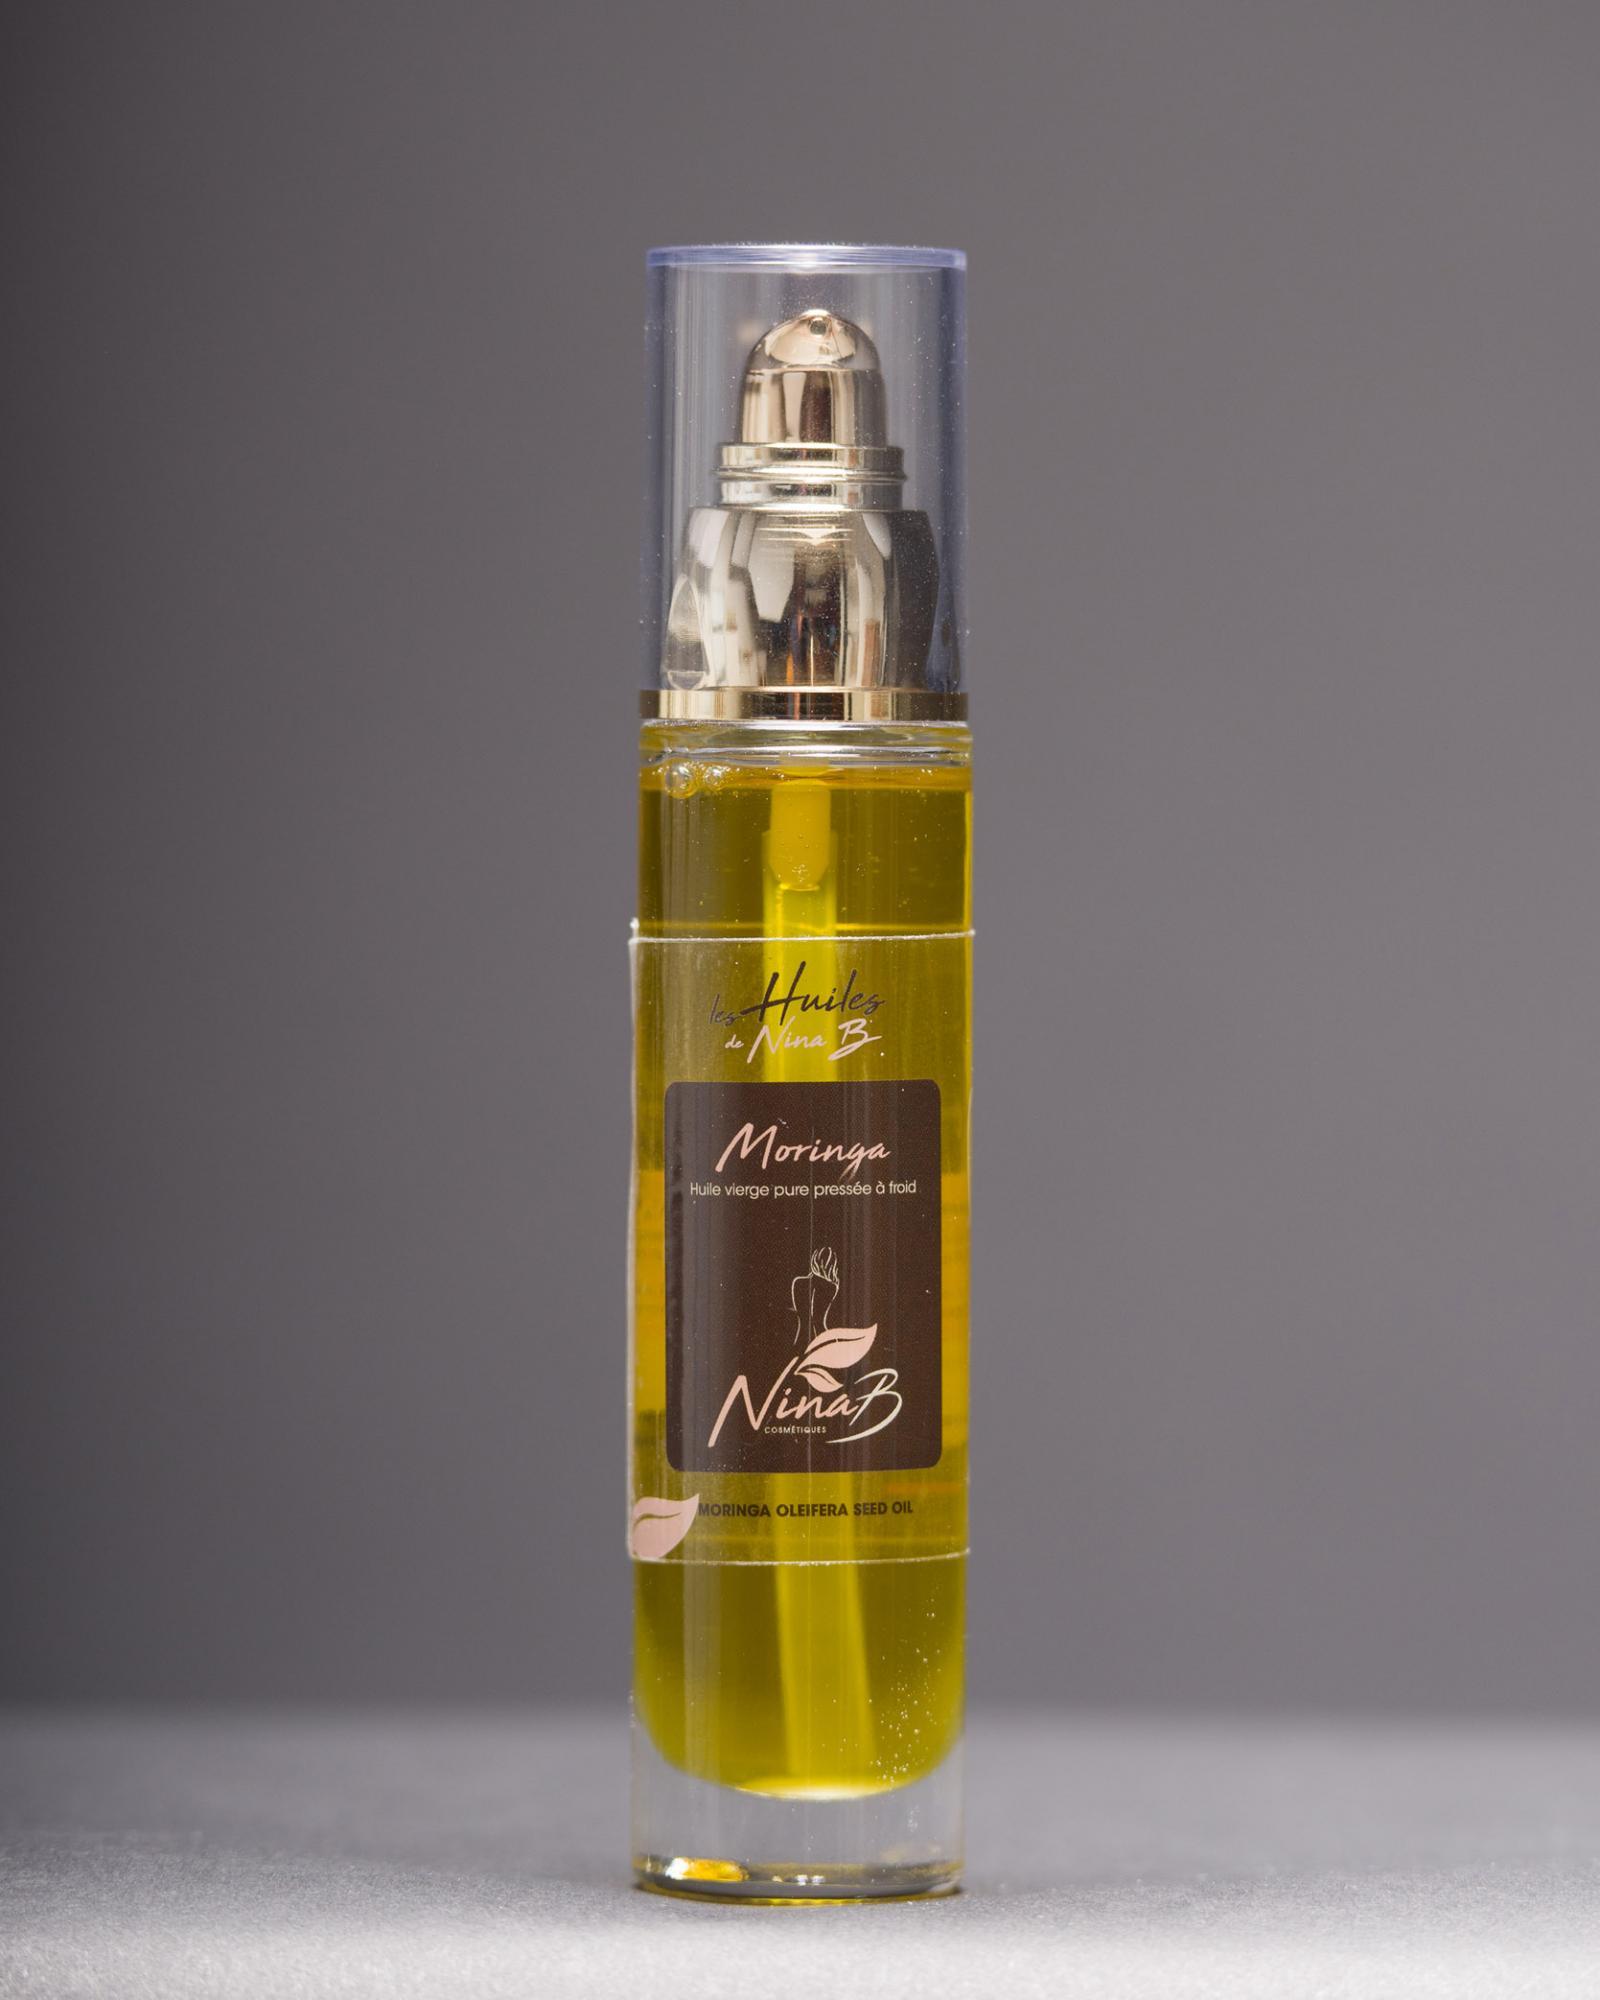 Huile Vierge de Moringa Bio - Produit cosmétique naturel, biologique